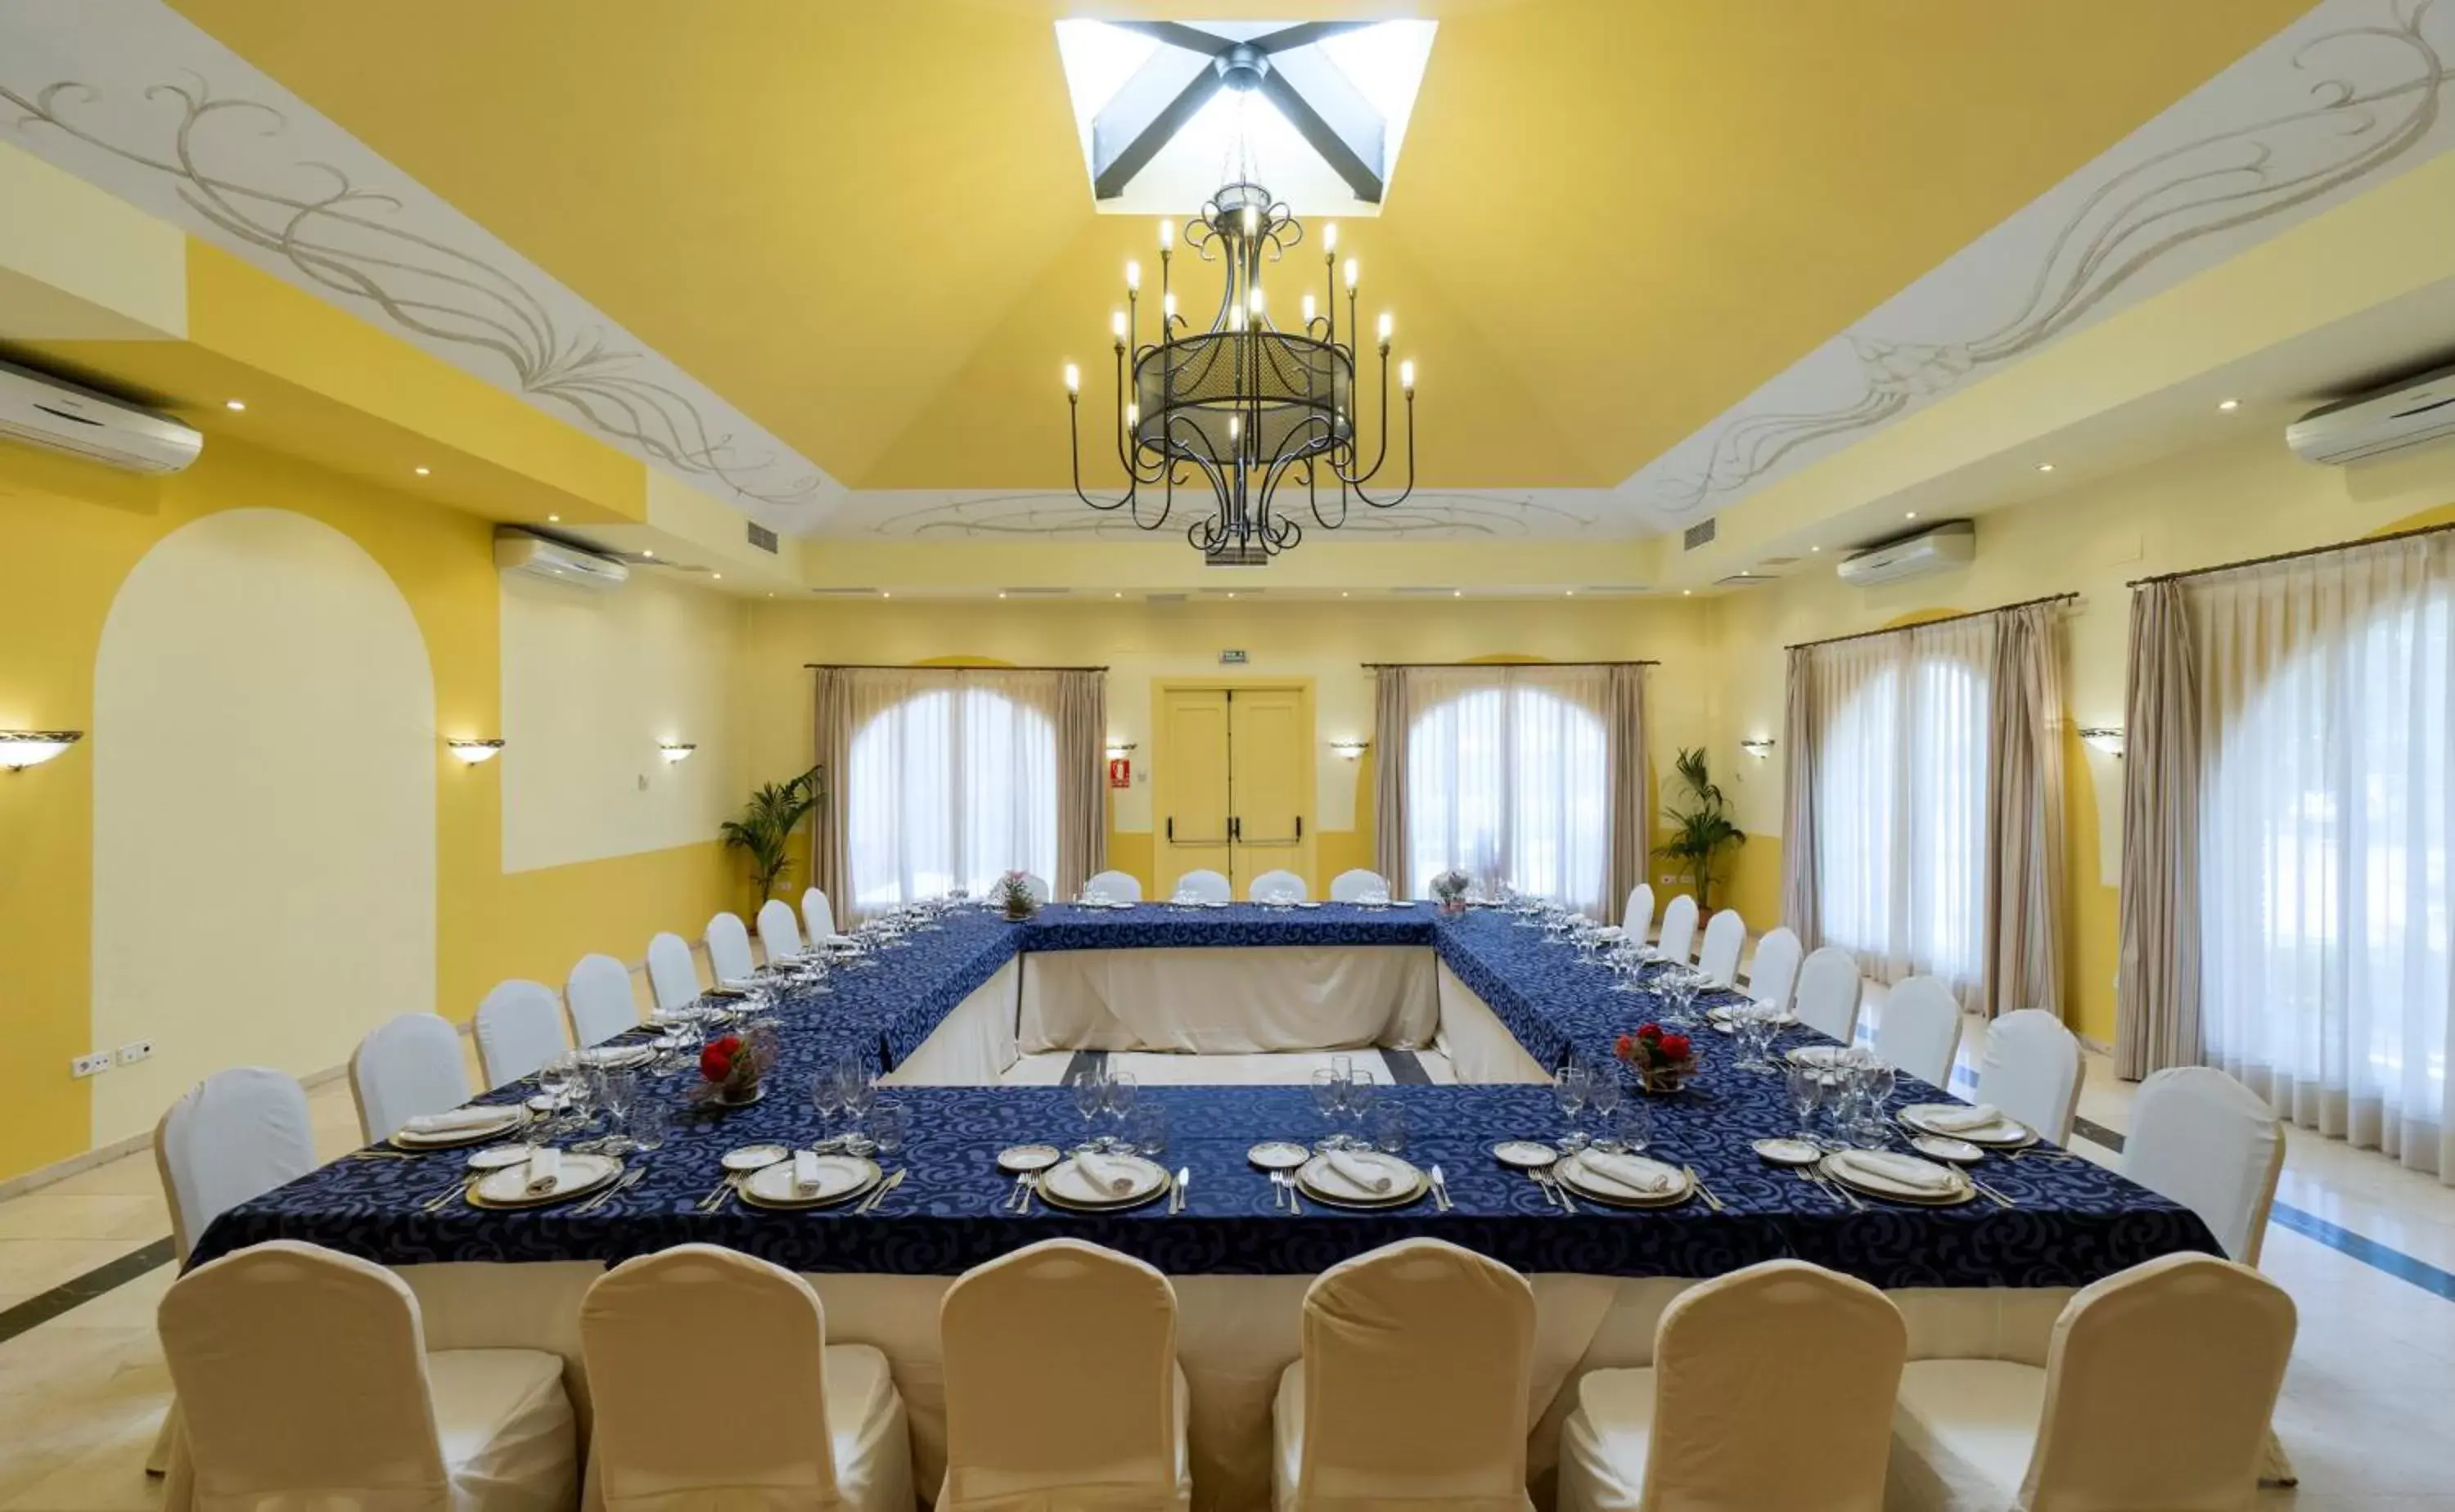 Meeting/conference room, Banquet Facilities in MS Fuente Las Piedras